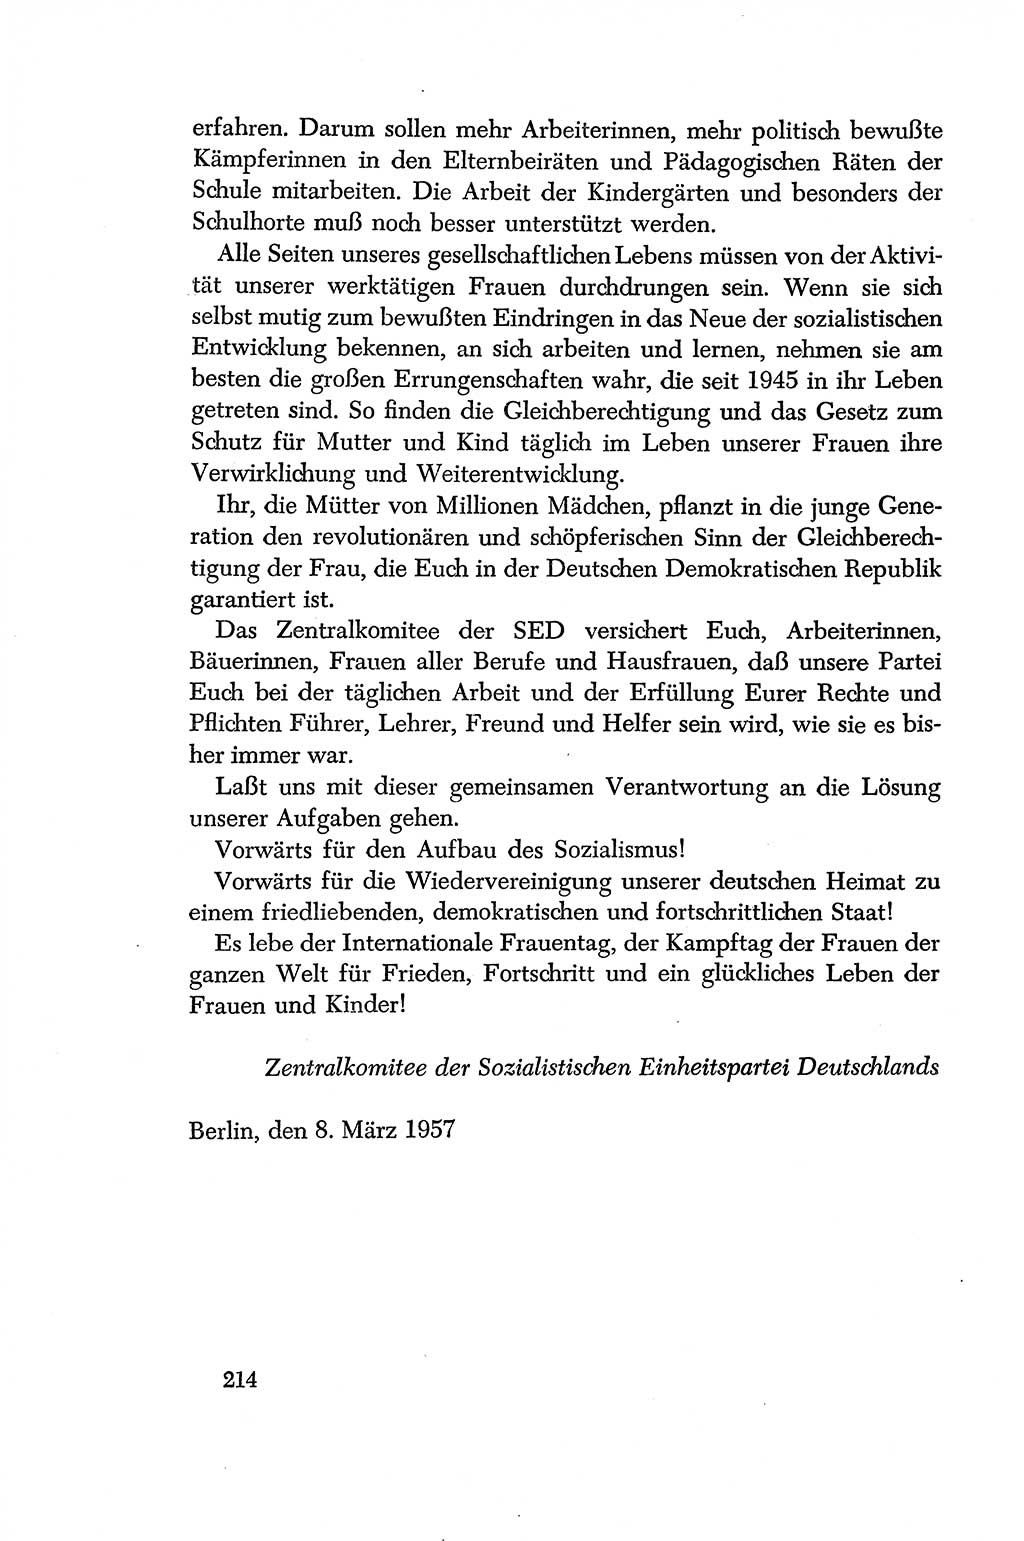 Dokumente der Sozialistischen Einheitspartei Deutschlands (SED) [Deutsche Demokratische Republik (DDR)] 1956-1957, Seite 214 (Dok. SED DDR 1956-1957, S. 214)